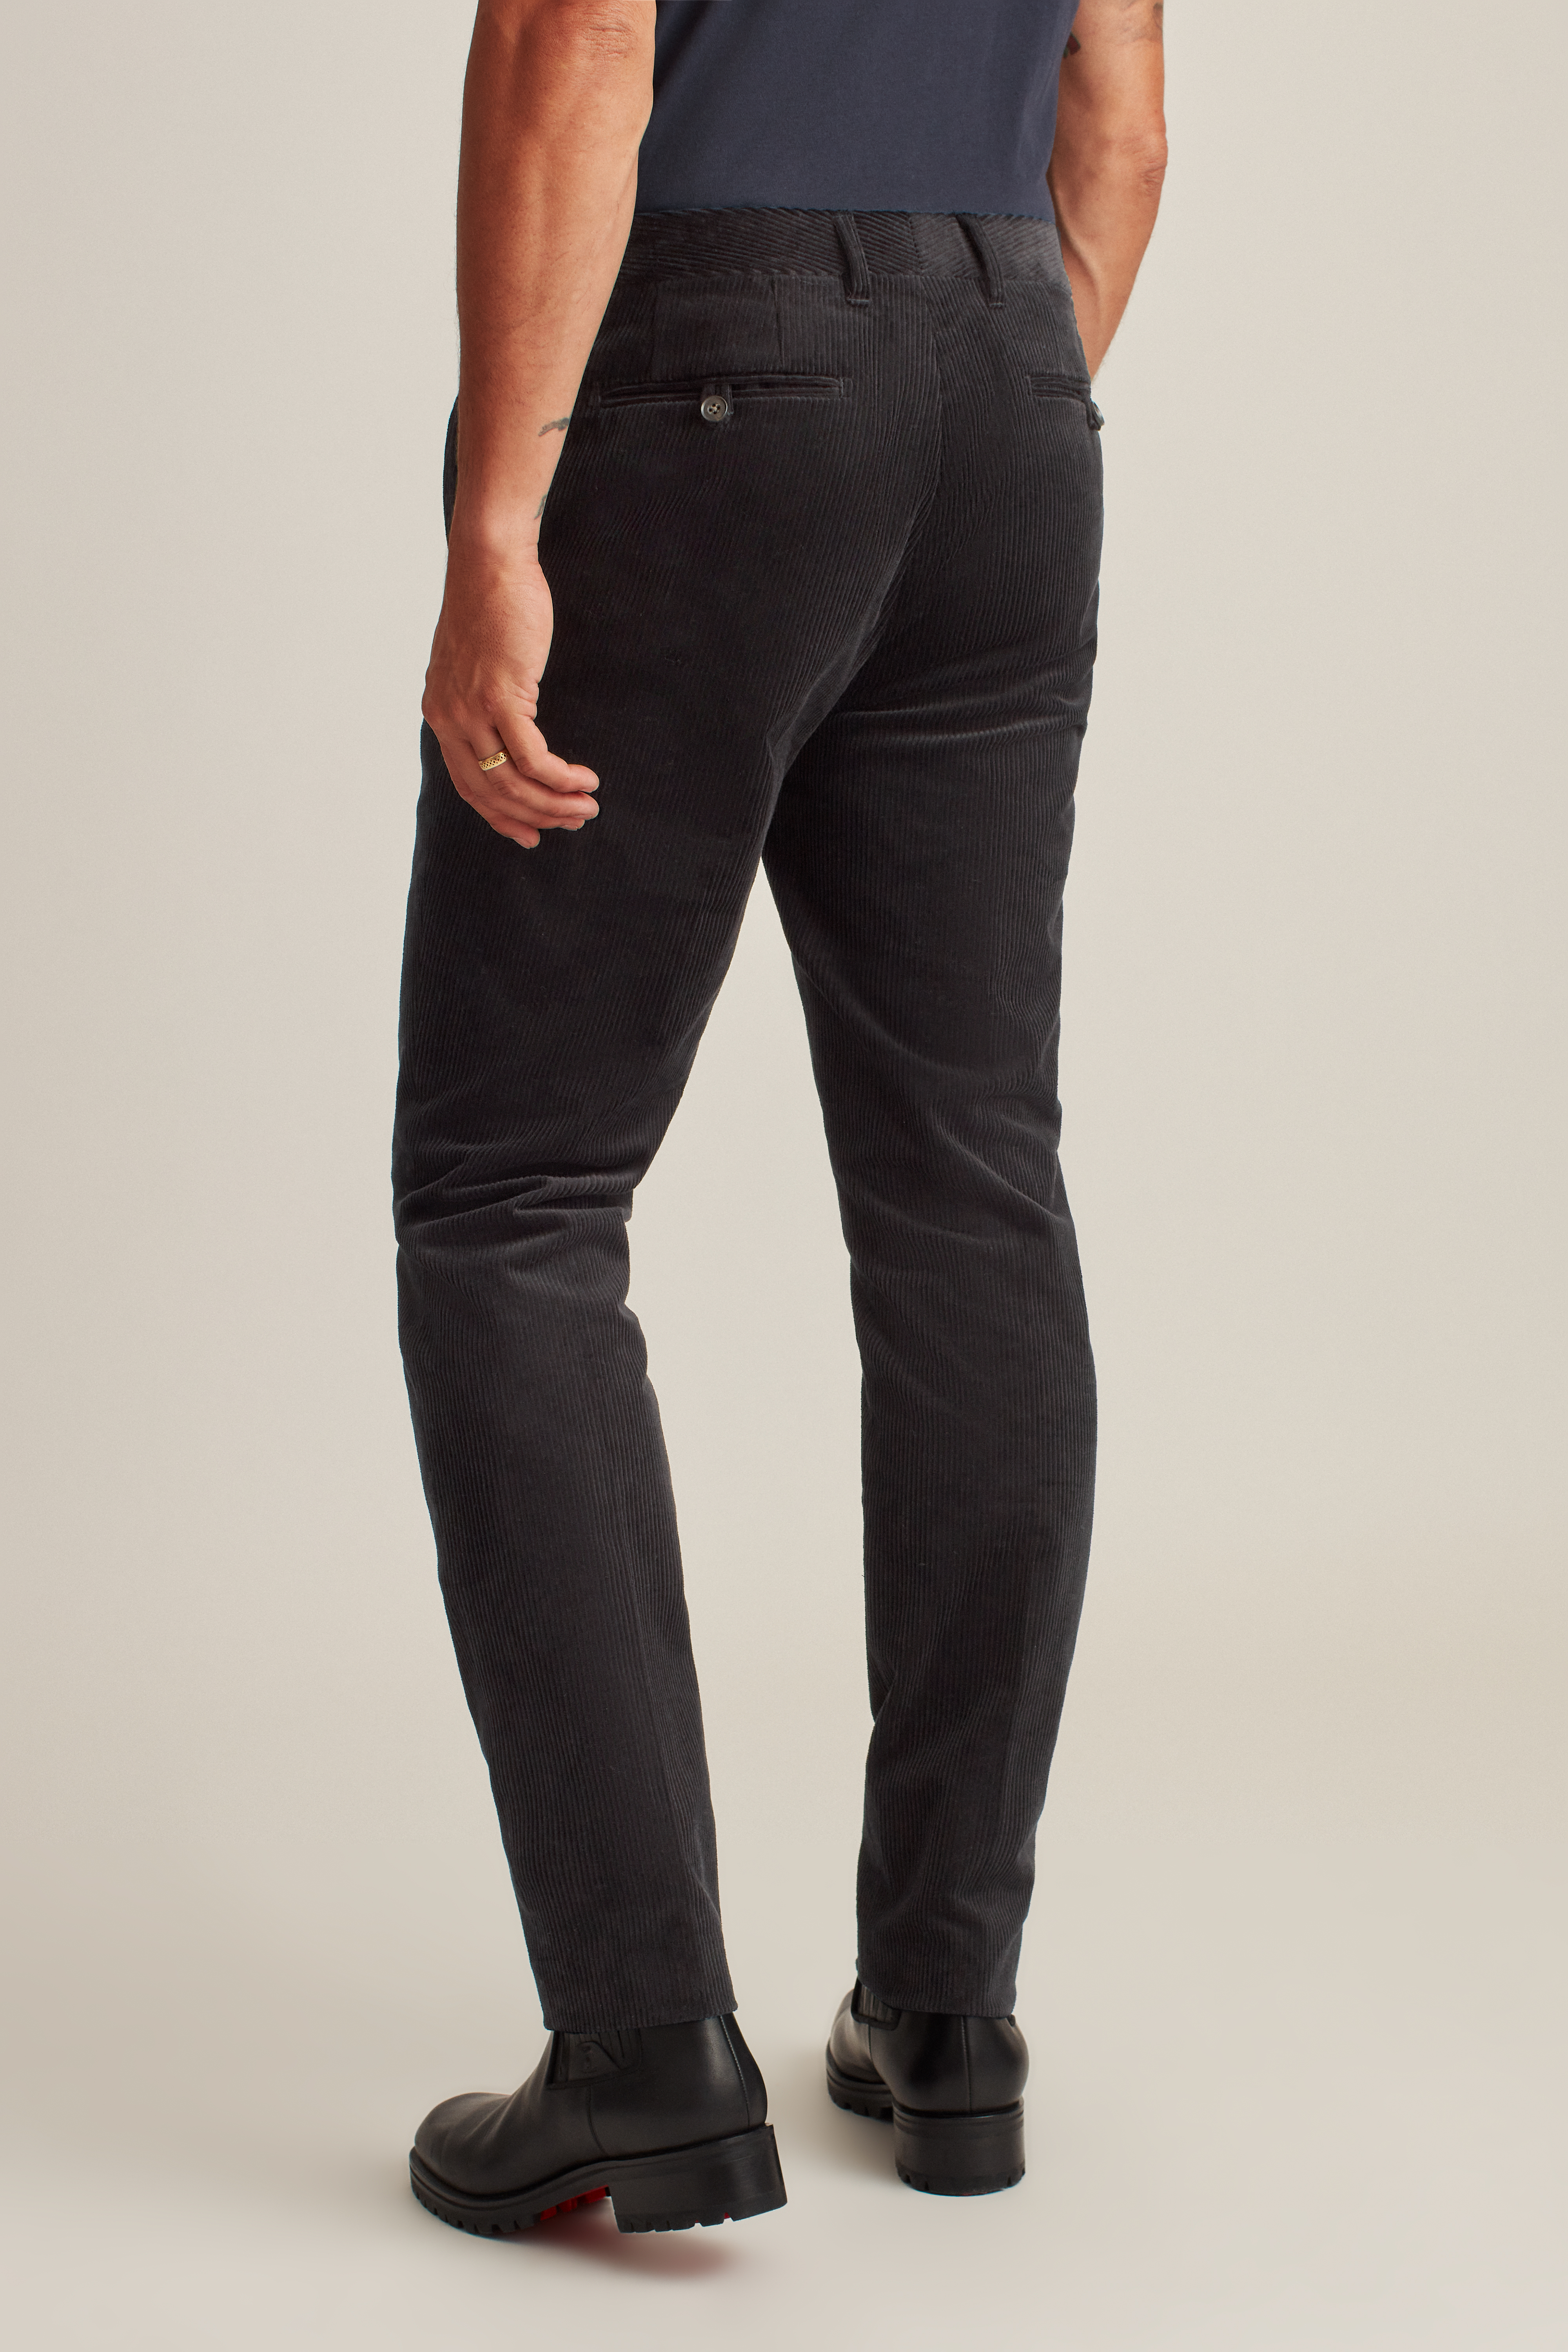 Skinny Fit Corduroy Pants - Brown - Men | H&M US